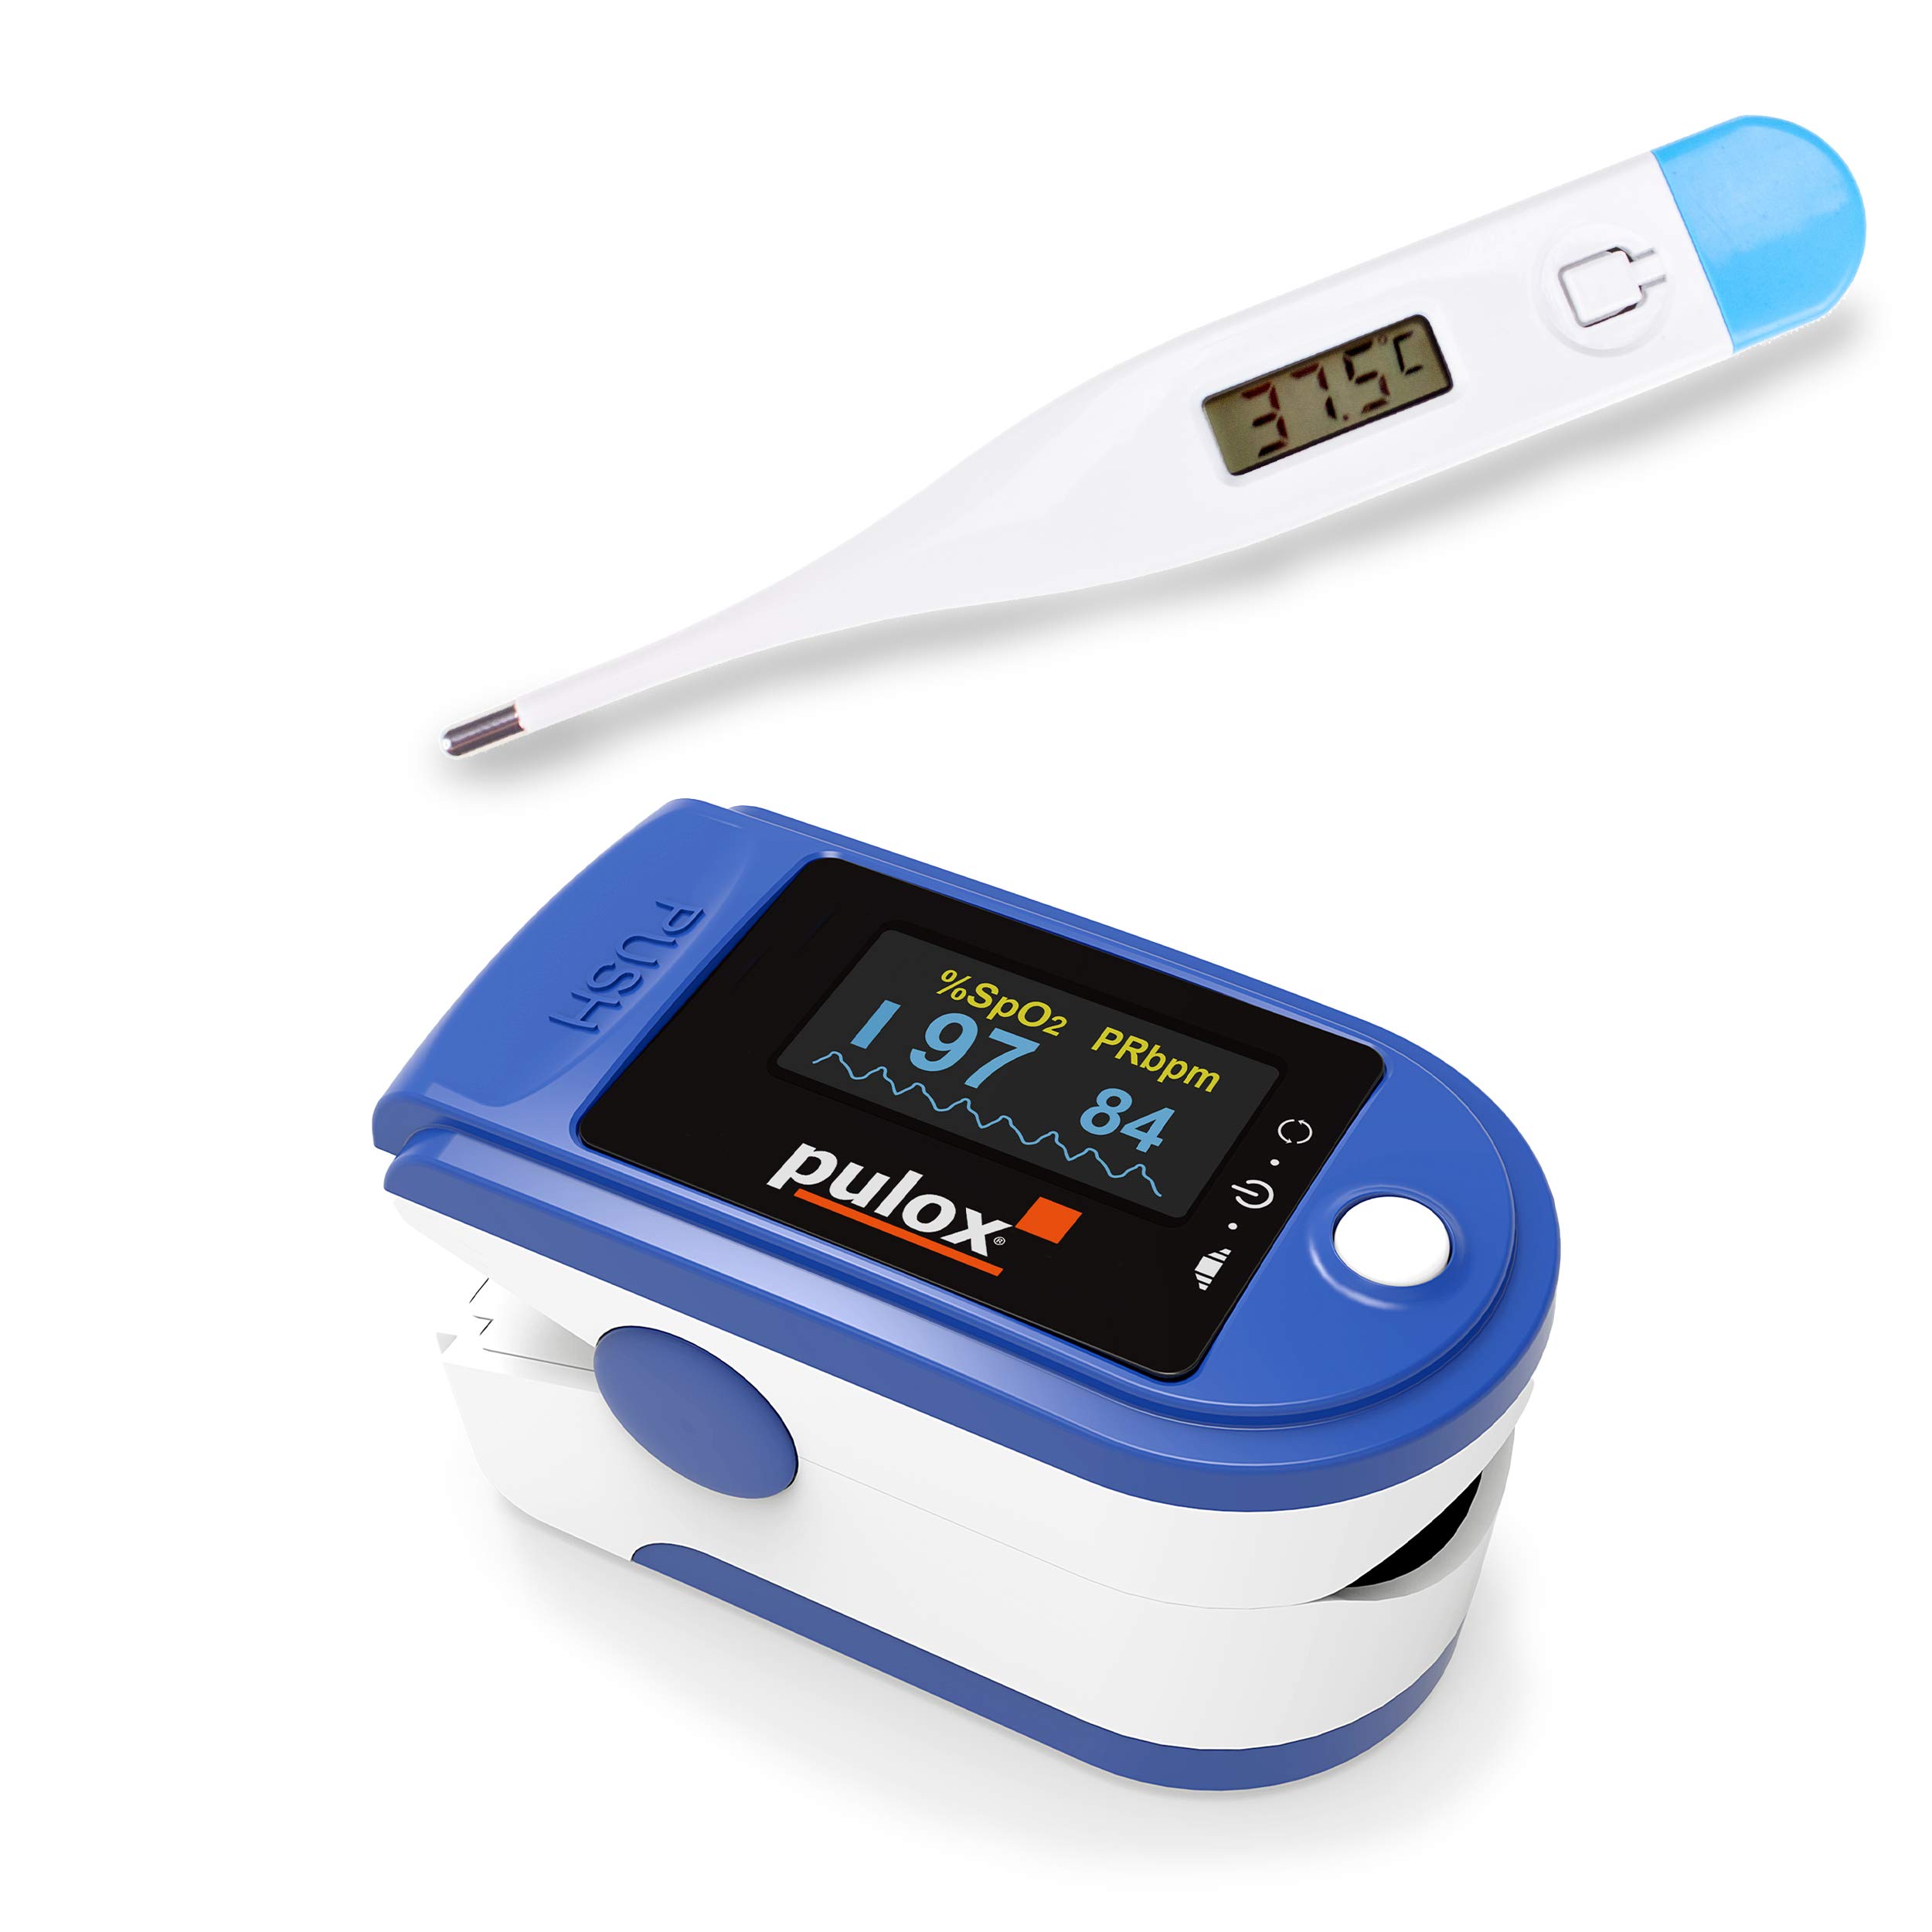 Pulsoximeter Pulox PO-200 Solo Blau mit Pulox Digital Thermometer